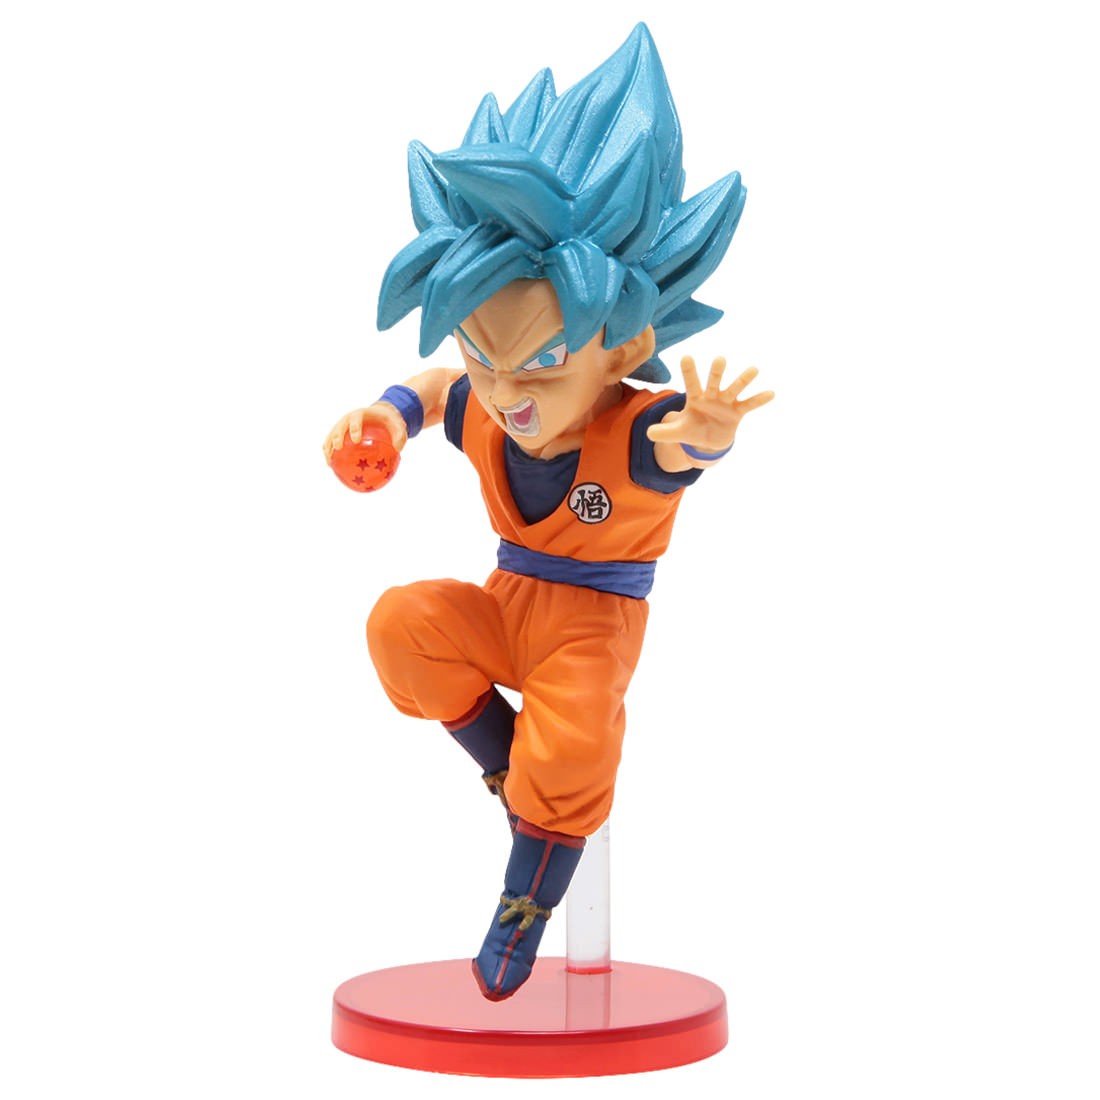 Banpresto Dragon Ball Z Dokkan Battle 5th Anniversary World Collectable Figure - 5 Super Saiyan God Super Saiyan Son Goku (blue)